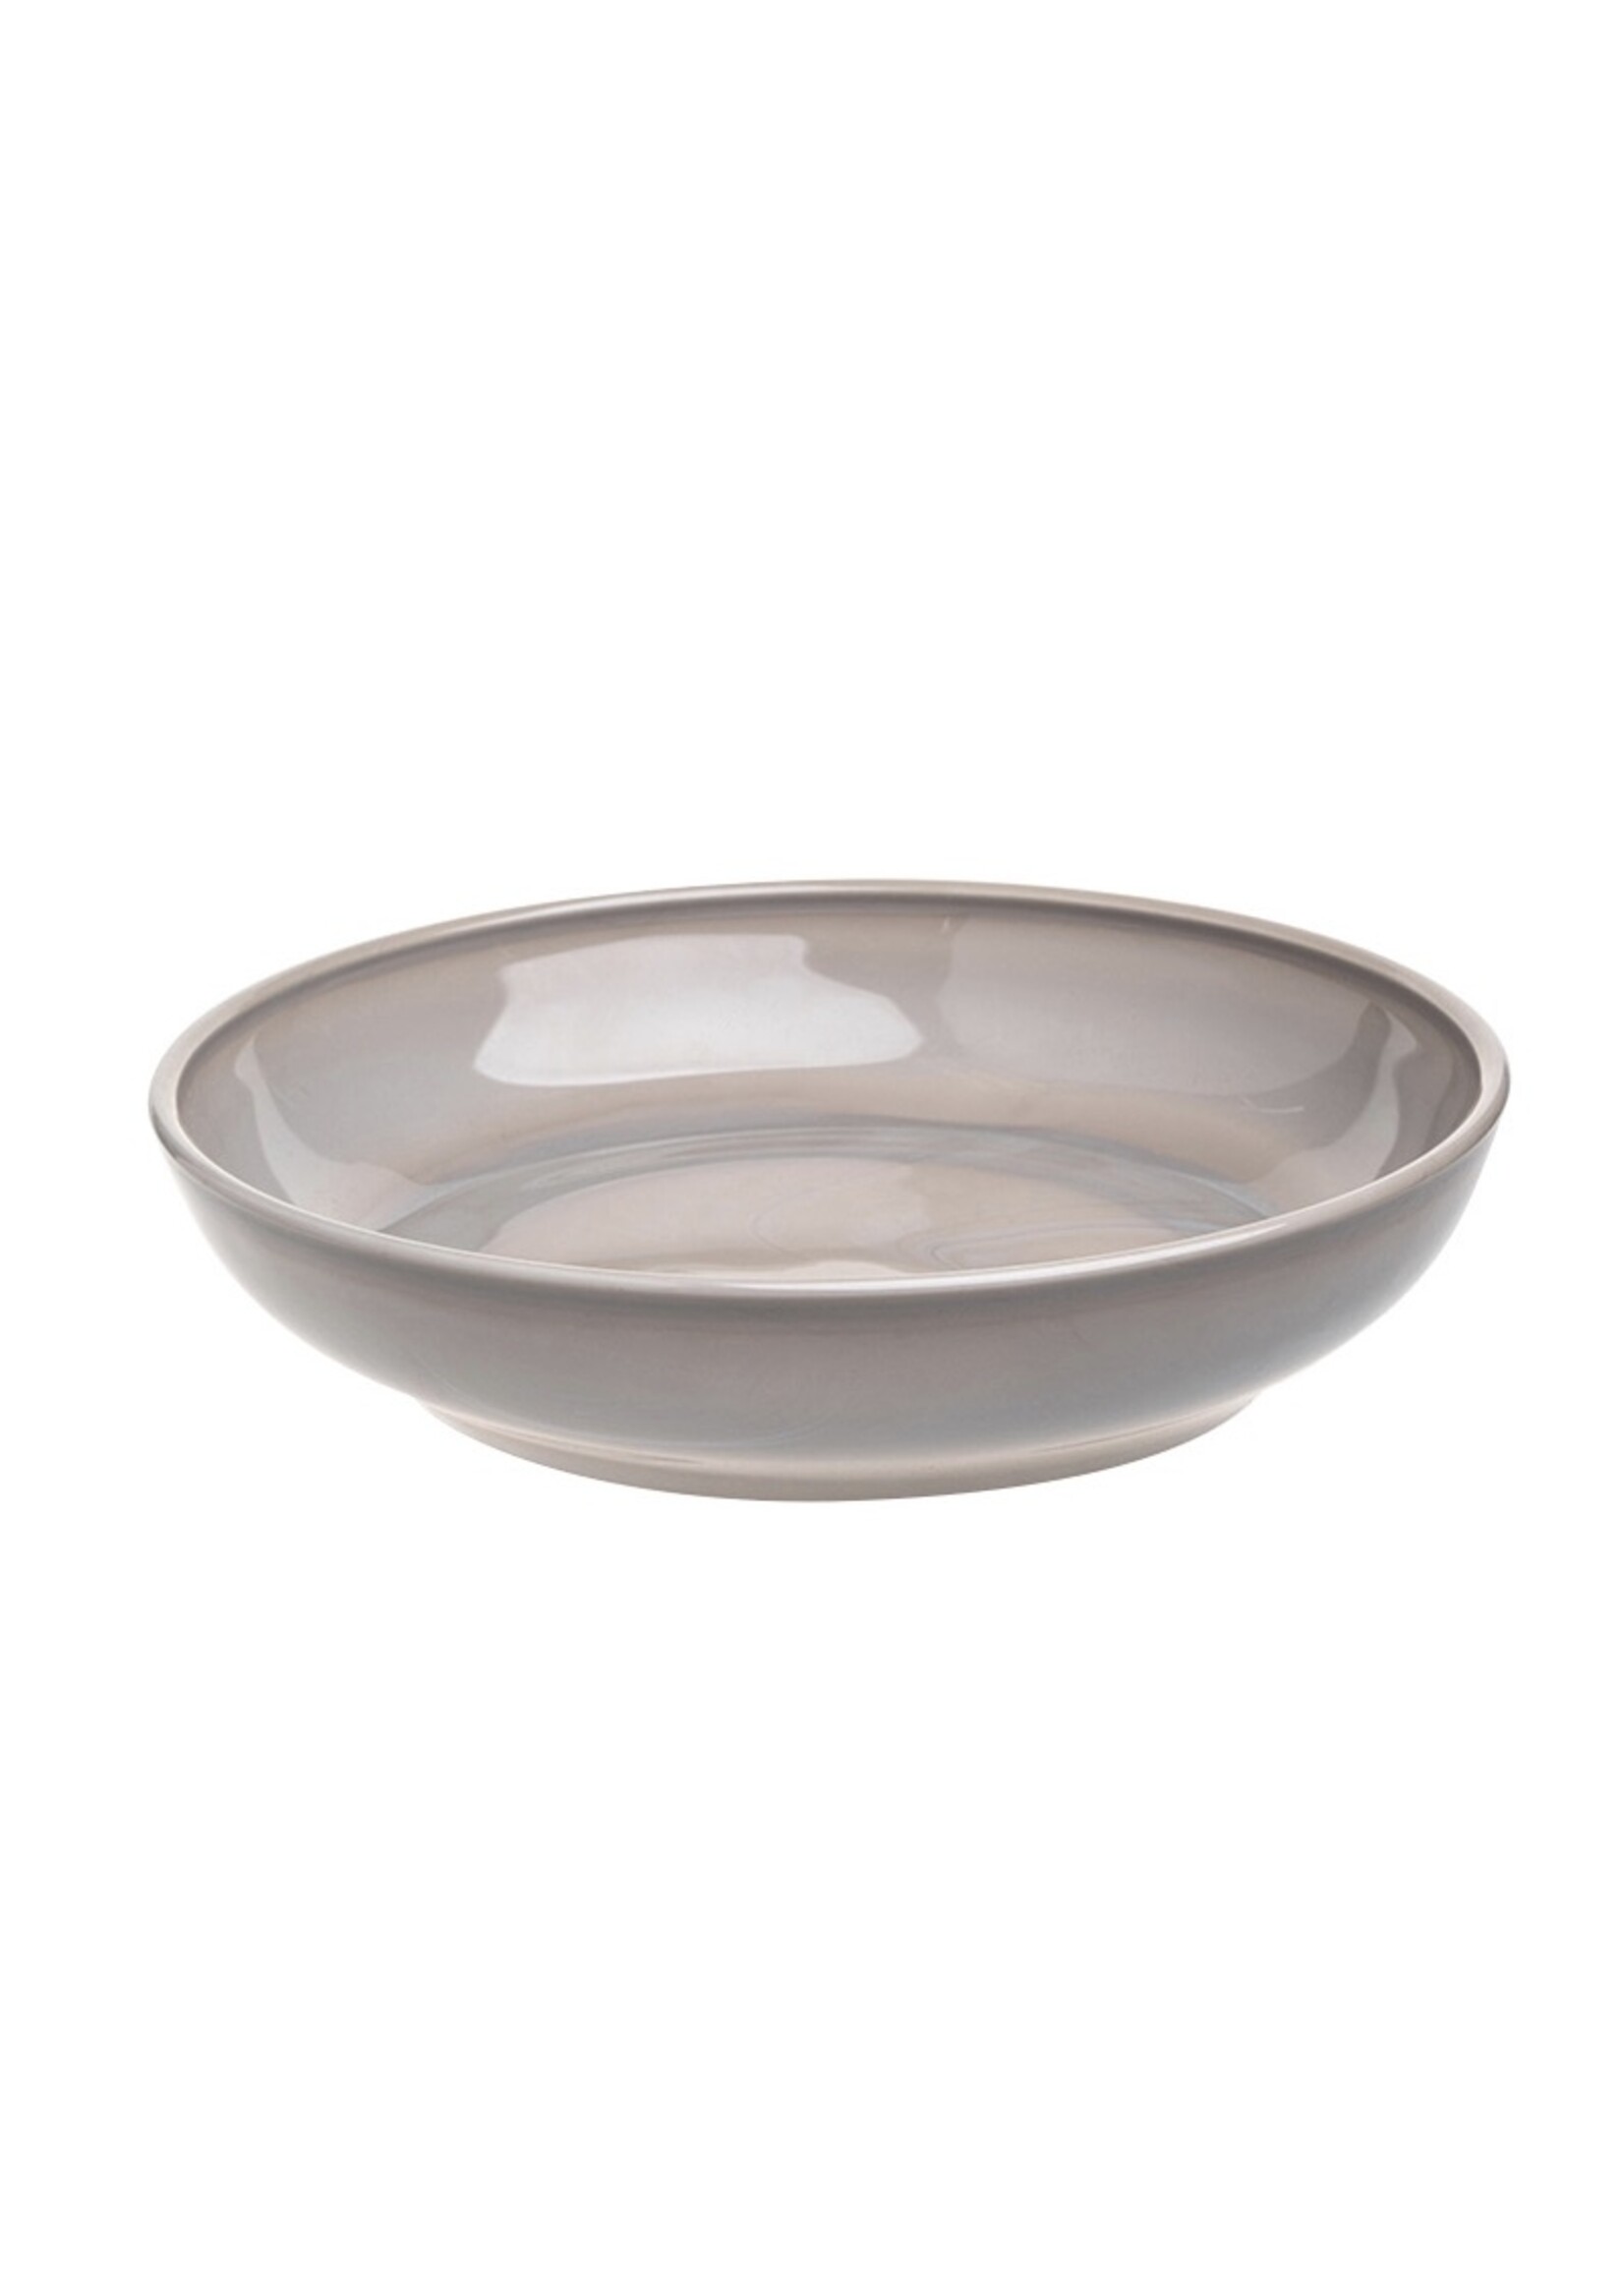 Mosser Glass 9" bowls by Mosser Glass